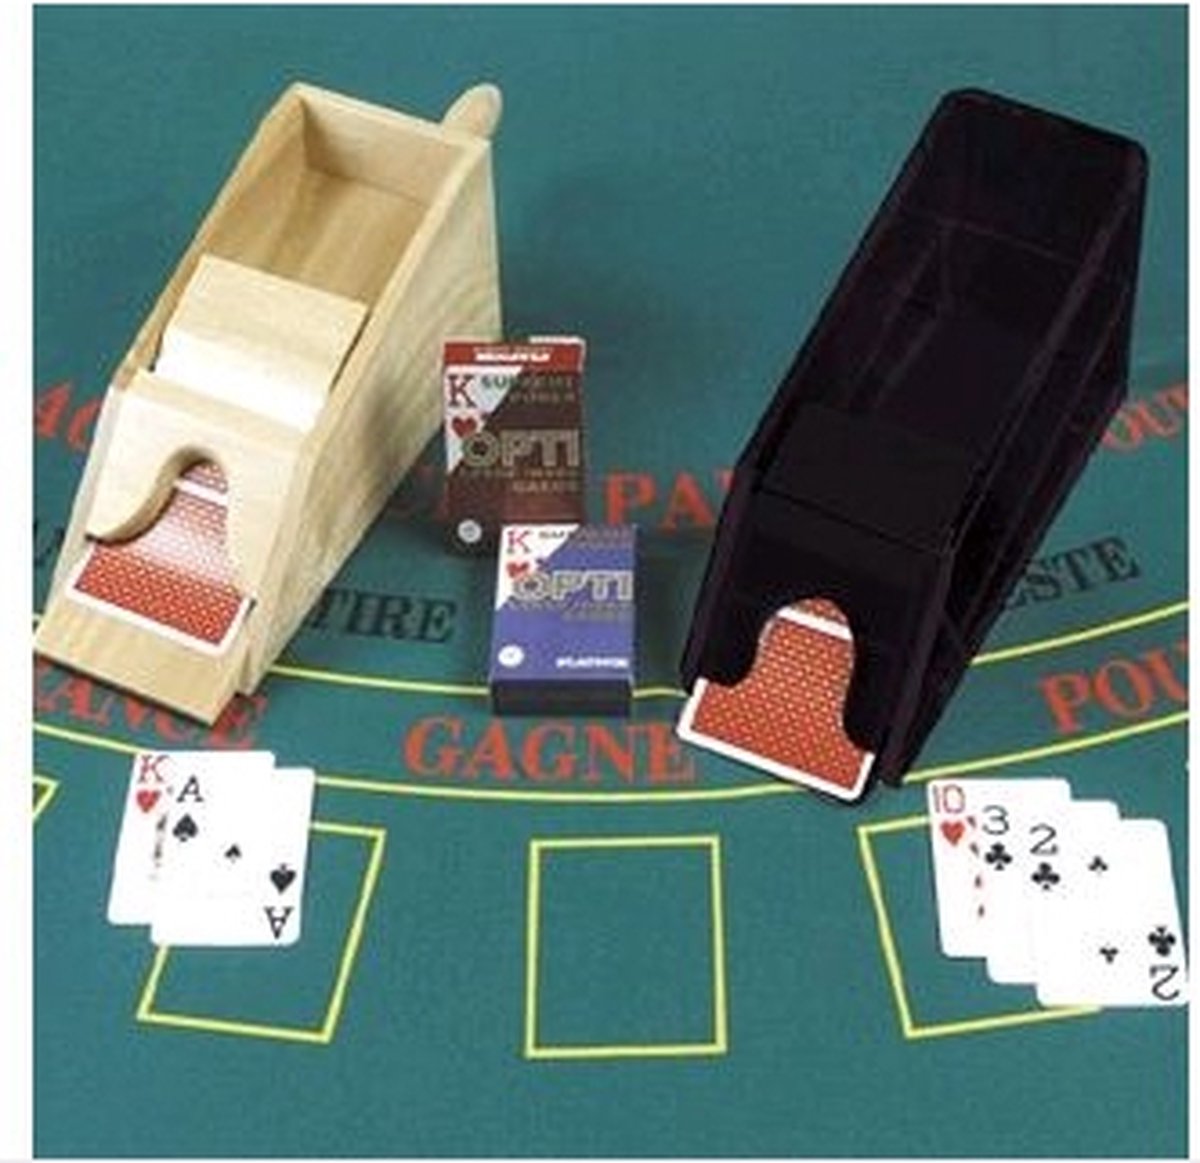 Distributeur de cartes jouer sabot en bois blackjack ou baccarat.